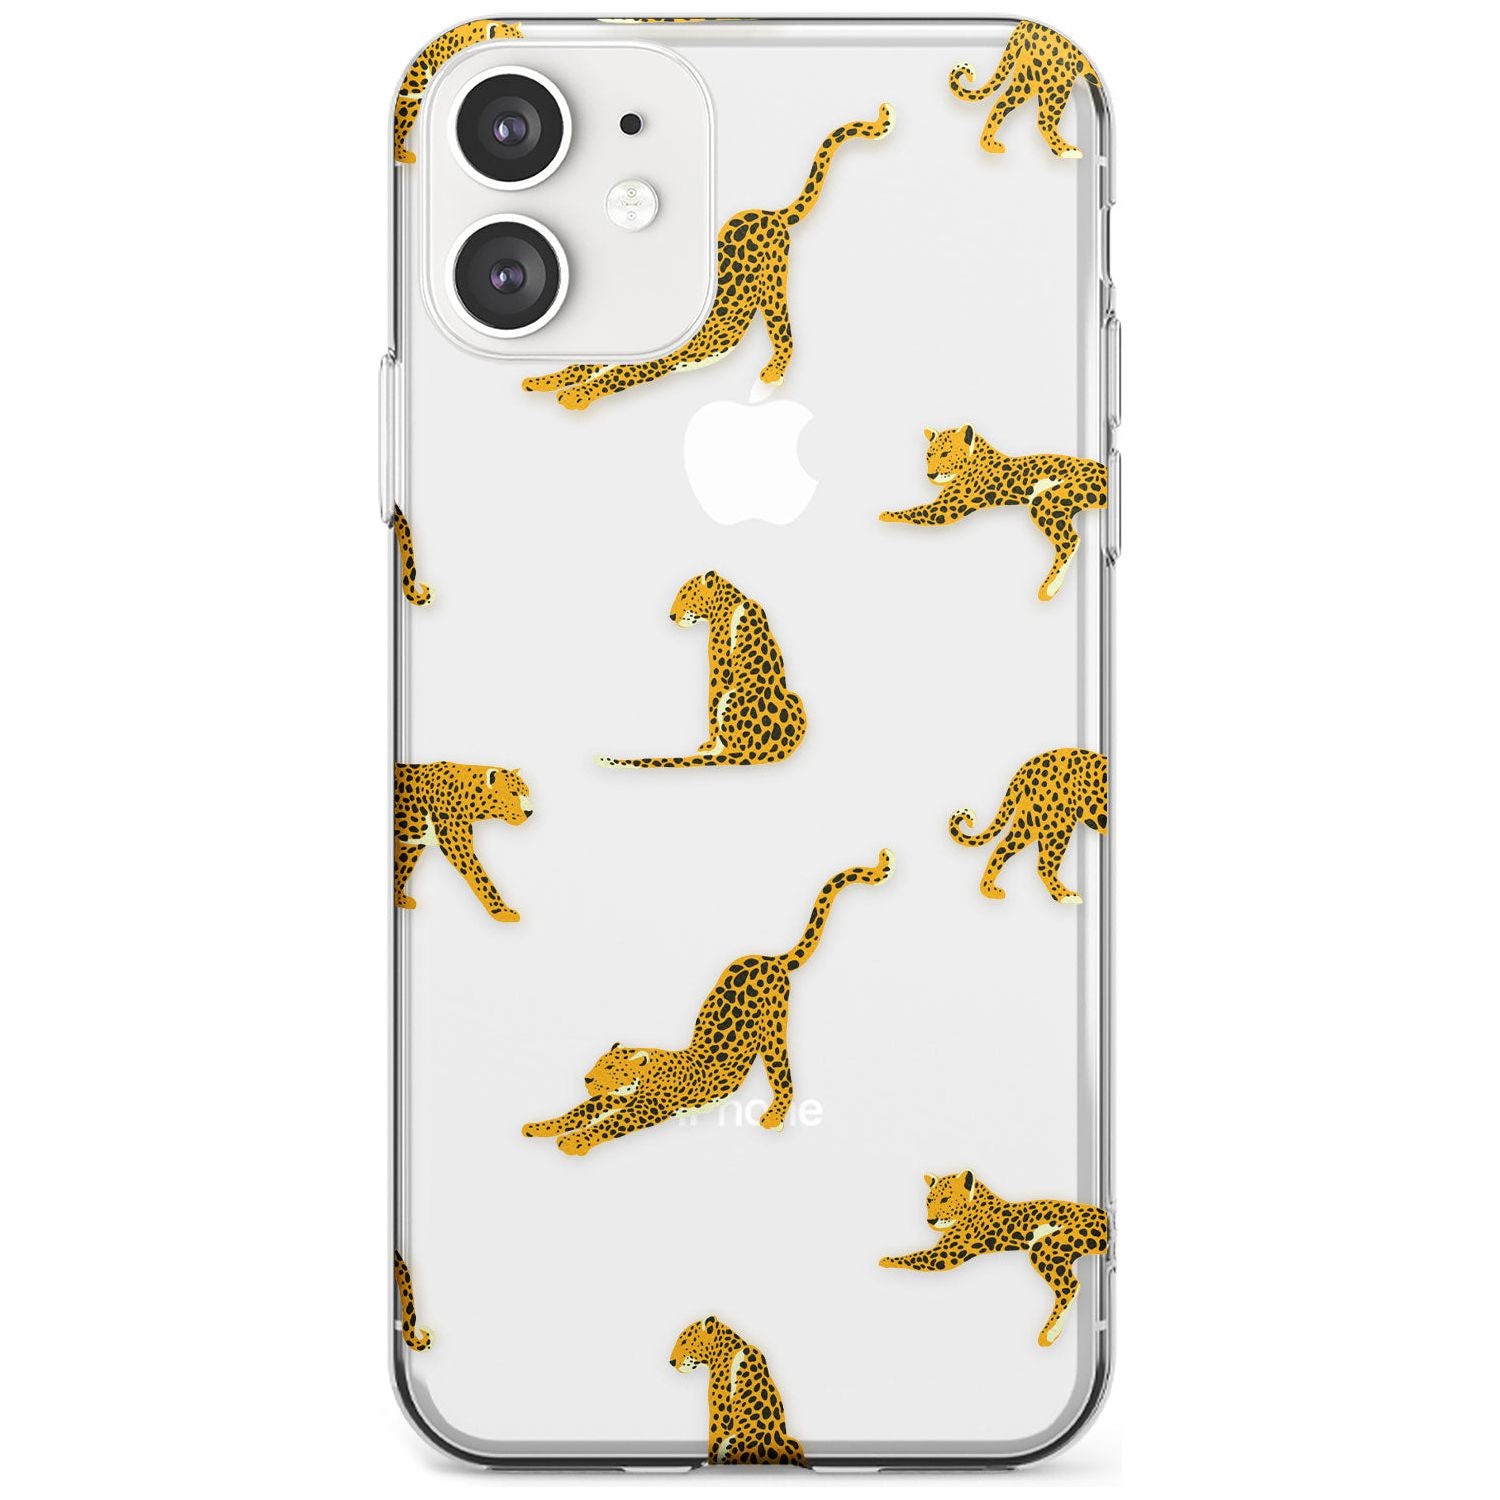 Clear Jaguar Jungle Cat Pattern Slim TPU Phone Case for iPhone 11